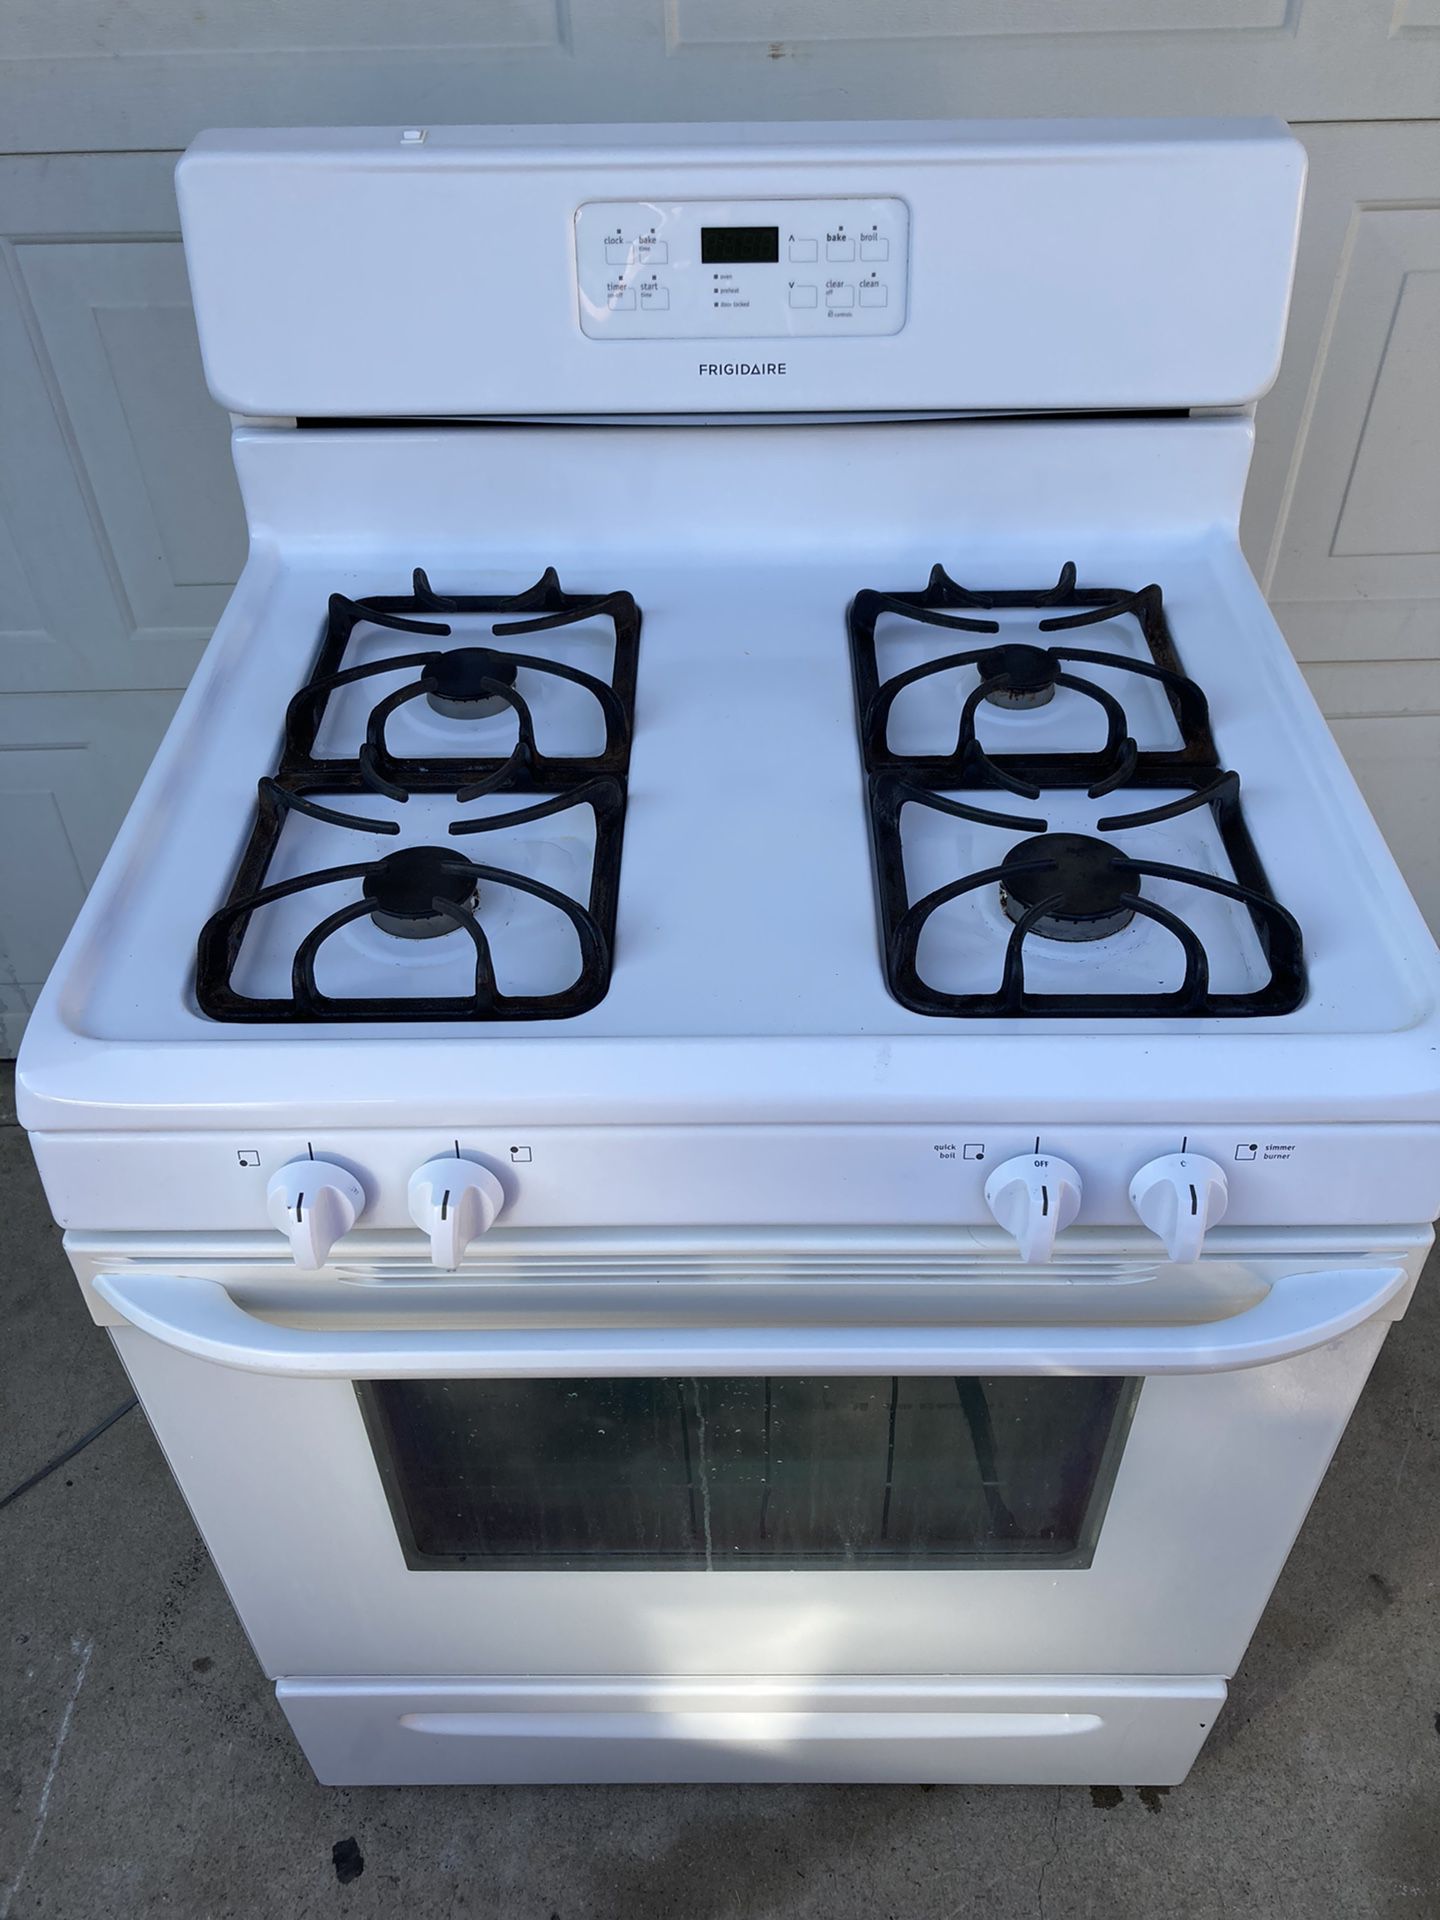 Frigidaire gas stove 30 day warranty